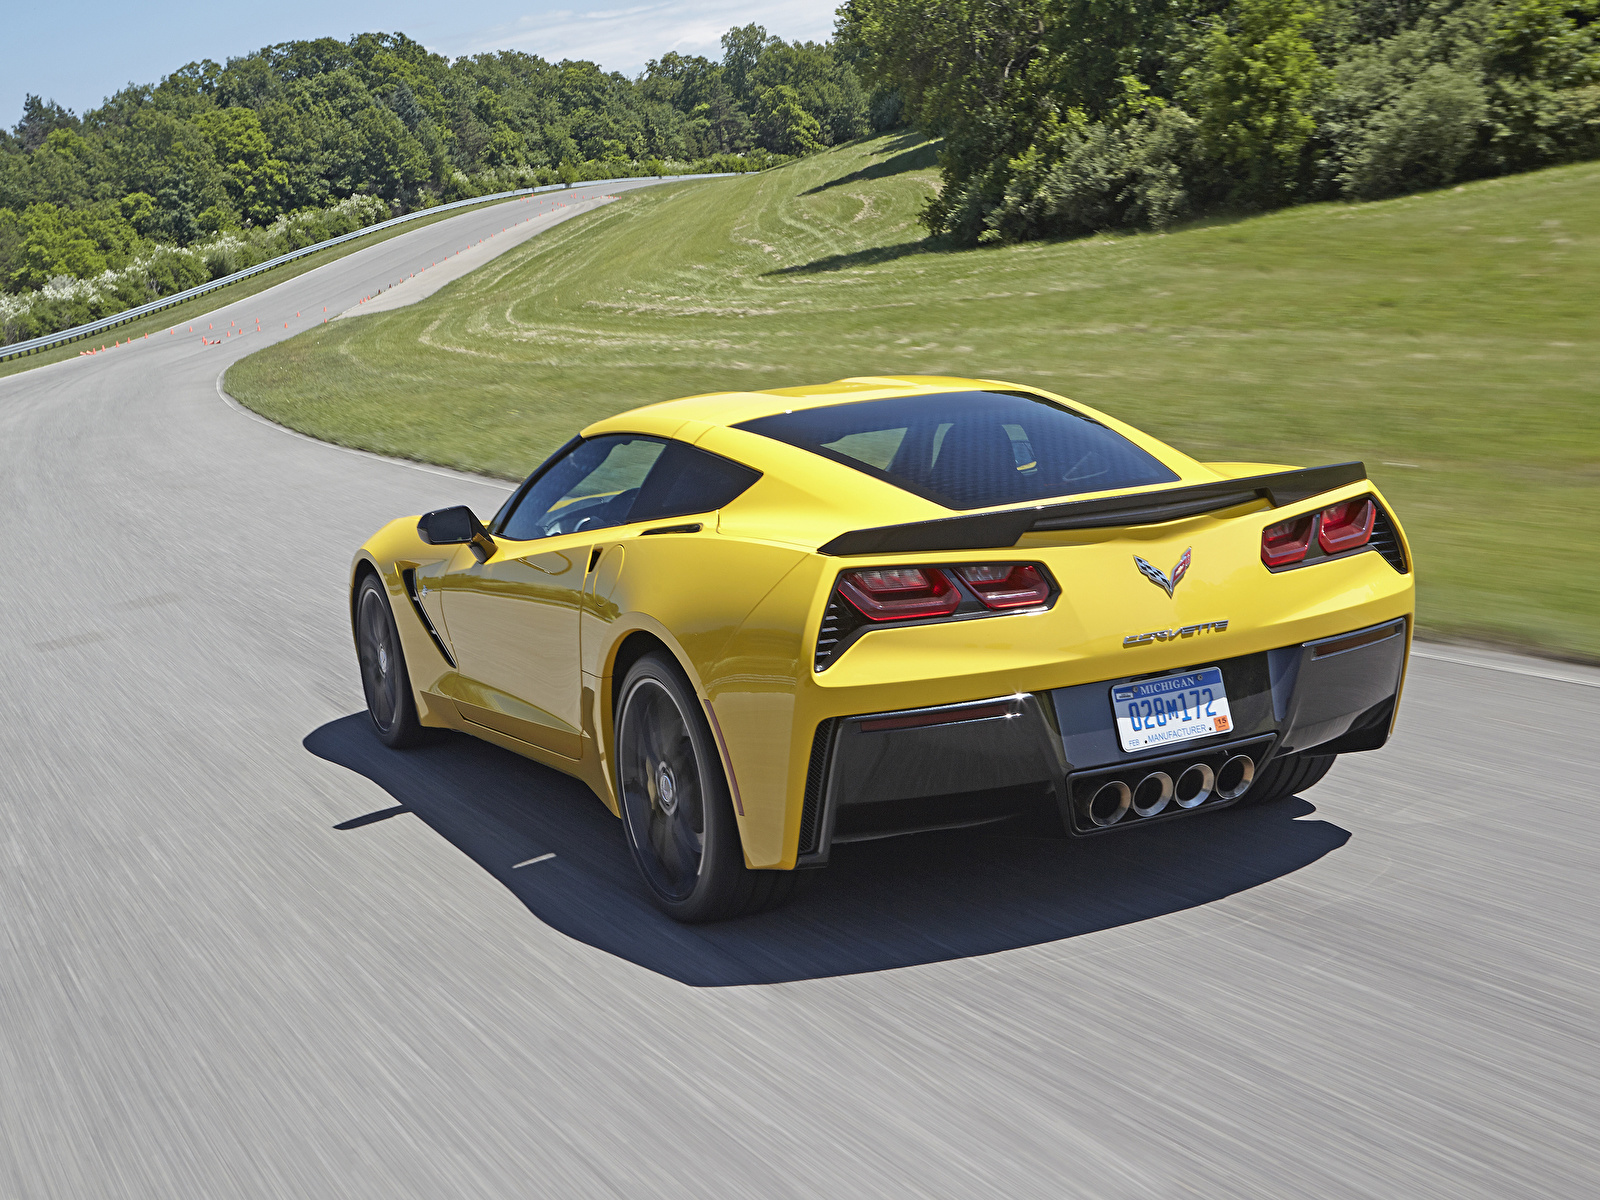 Картинки Chevrolet Corvette c7 Stingray желтые Дороги Движение машина вид сзади 1600x1200 Шевроле желтая Желтый желтых едет едущий едущая скорость авто Сзади машины Автомобили автомобиль